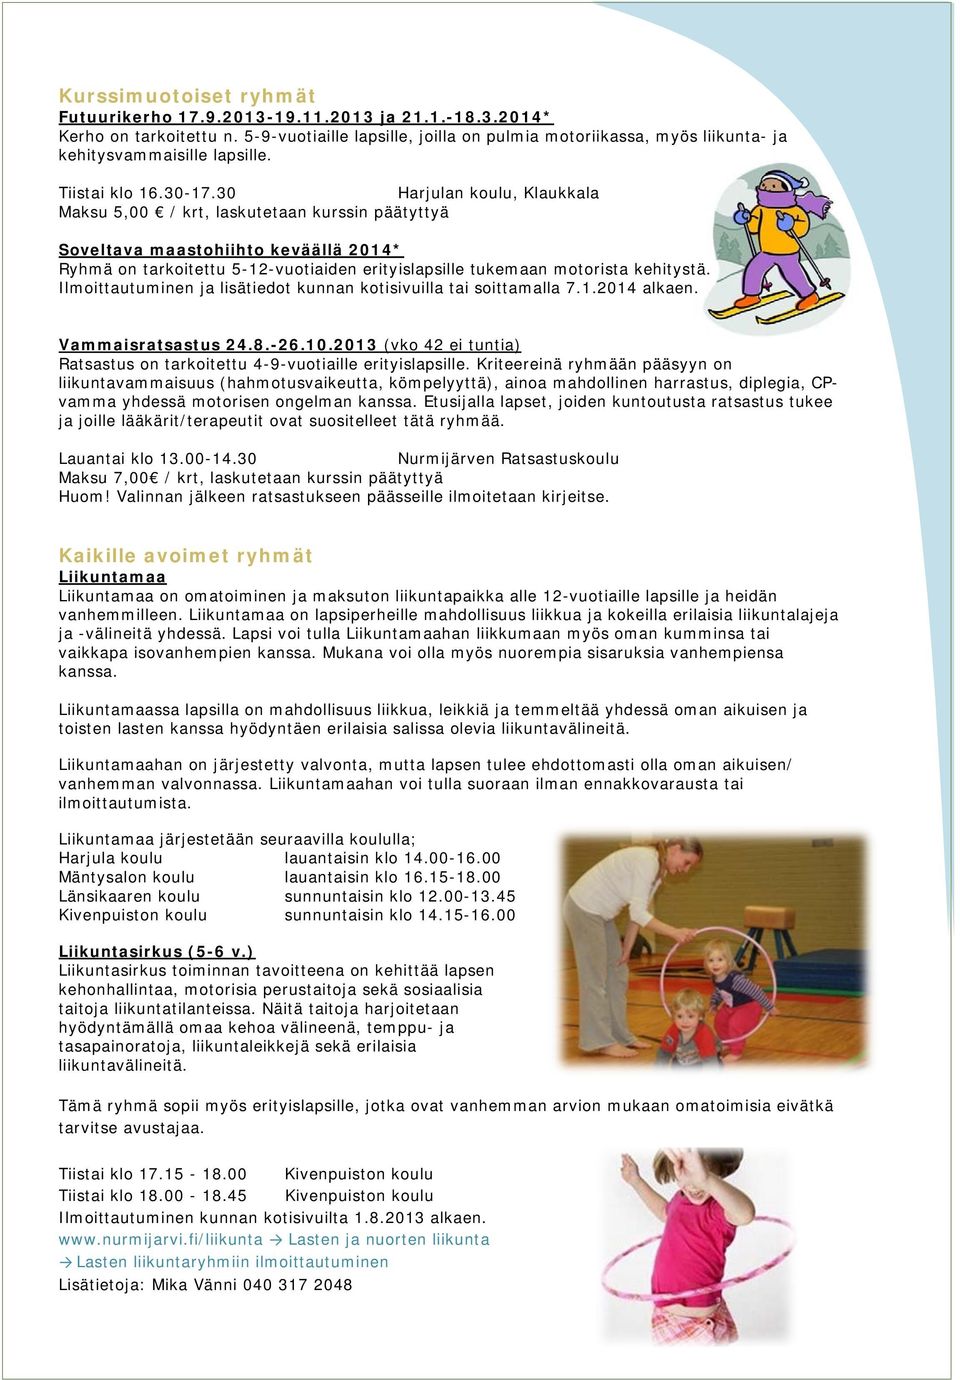 30 Harjulan koulu, Klaukkala Maksu 5,00 / krt, laskutetaan kurssin päätyttyä Soveltava maastohiihto keväällä 2014* Ryhmä on tarkoitettu 5-12-vuotiaiden erityislapsille tukemaan motorista kehitystä.